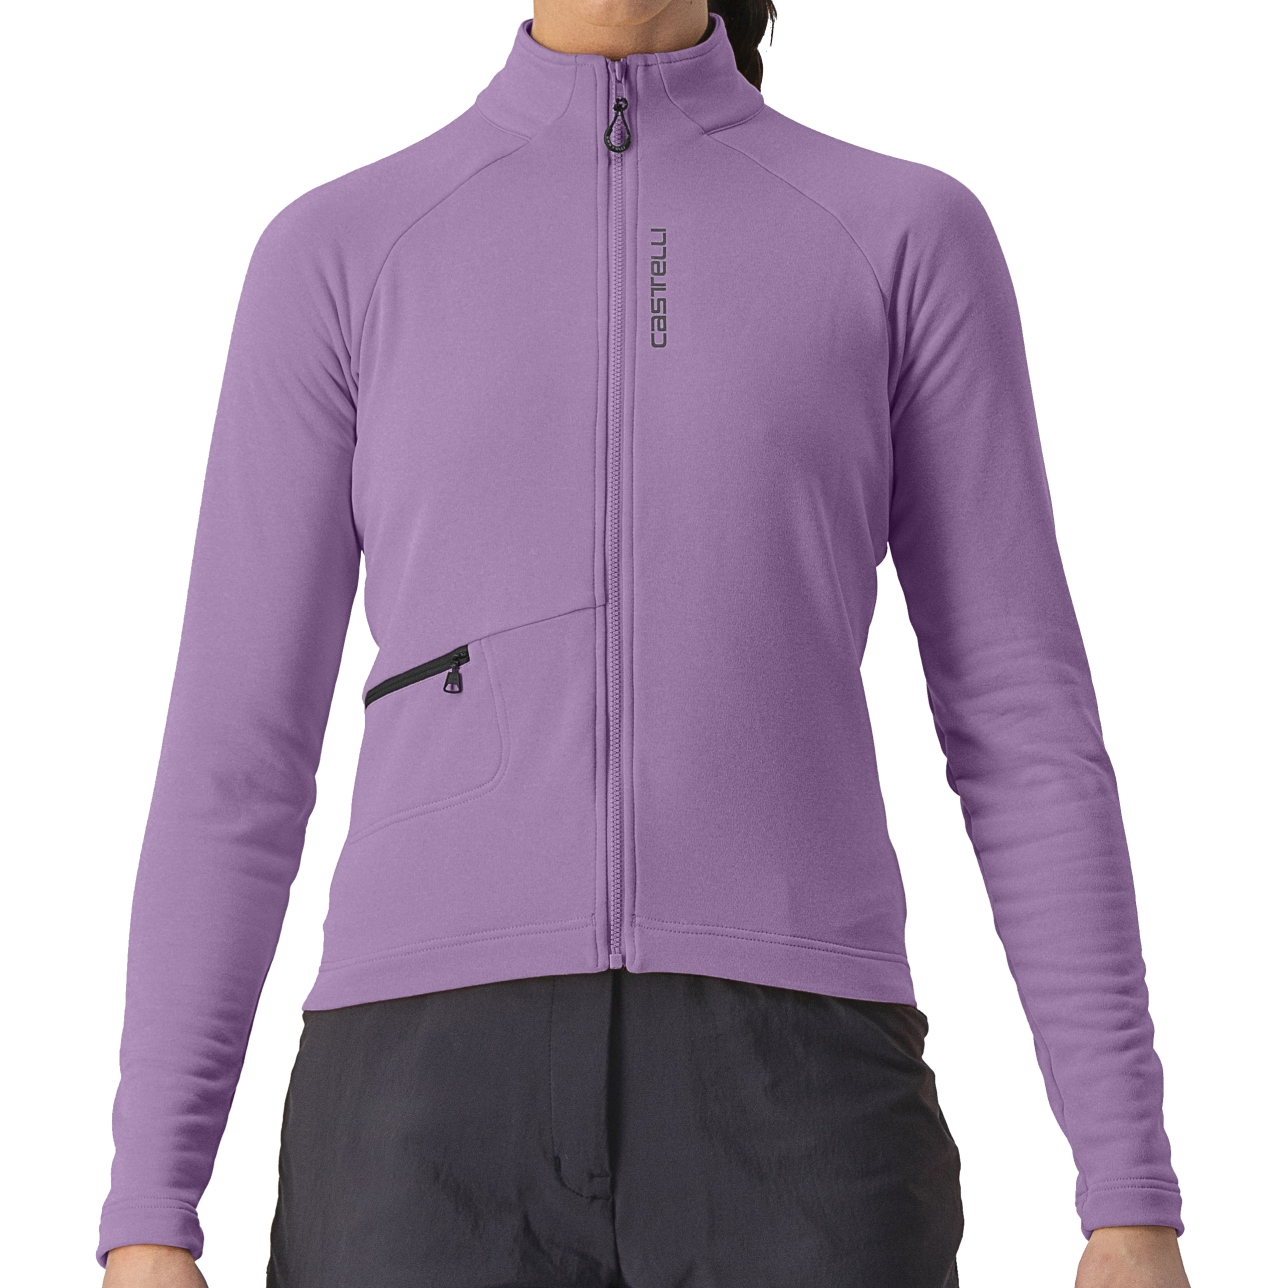 Produktbild von Castelli Unlimited Trail Damen Langarmtrikot - violet mist/dark grey 534